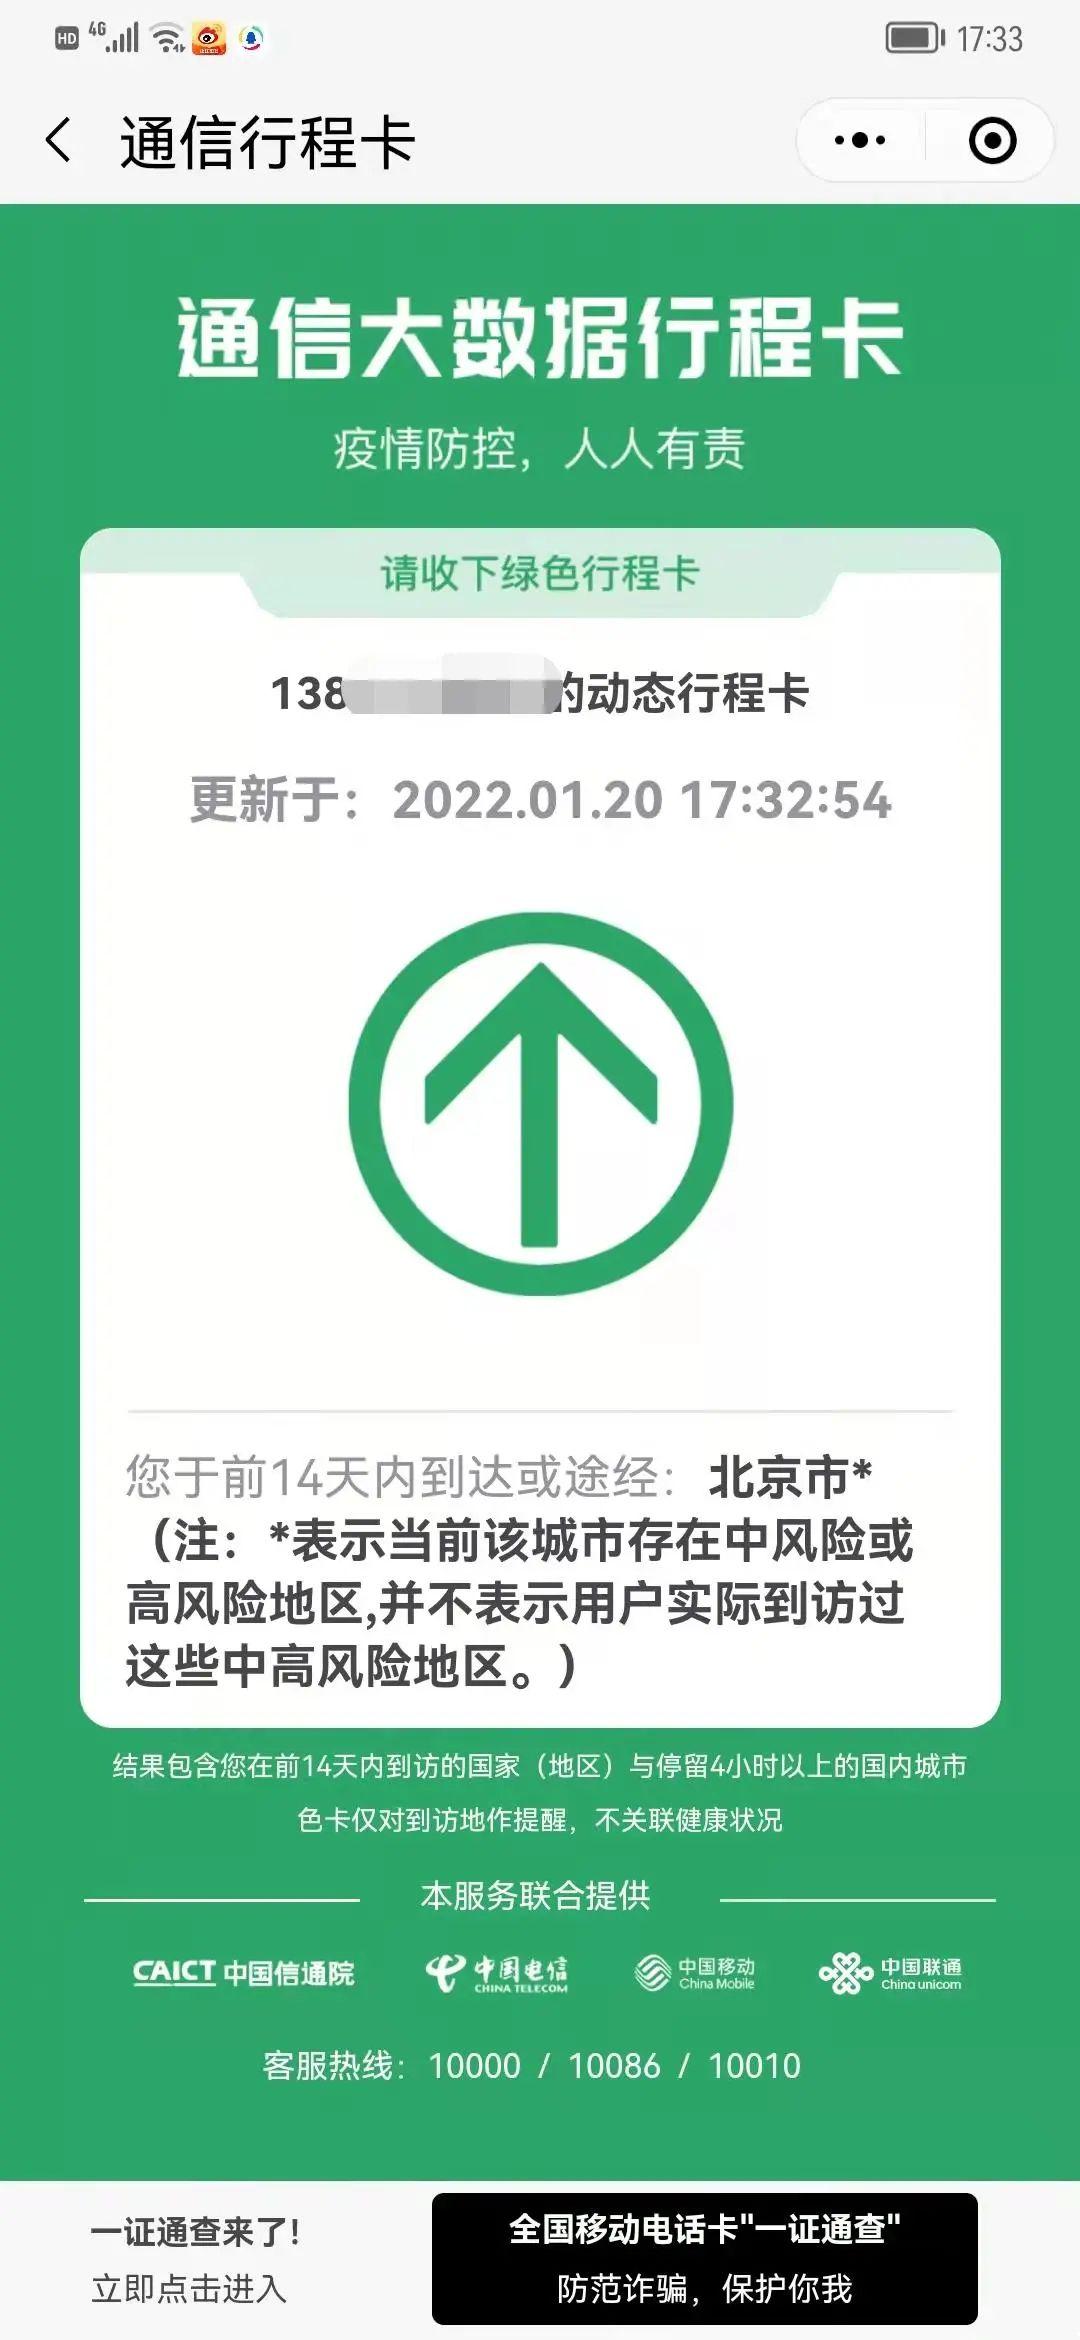 绿码带星是什么样子图片？北京行程卡已带星影响出行吗？